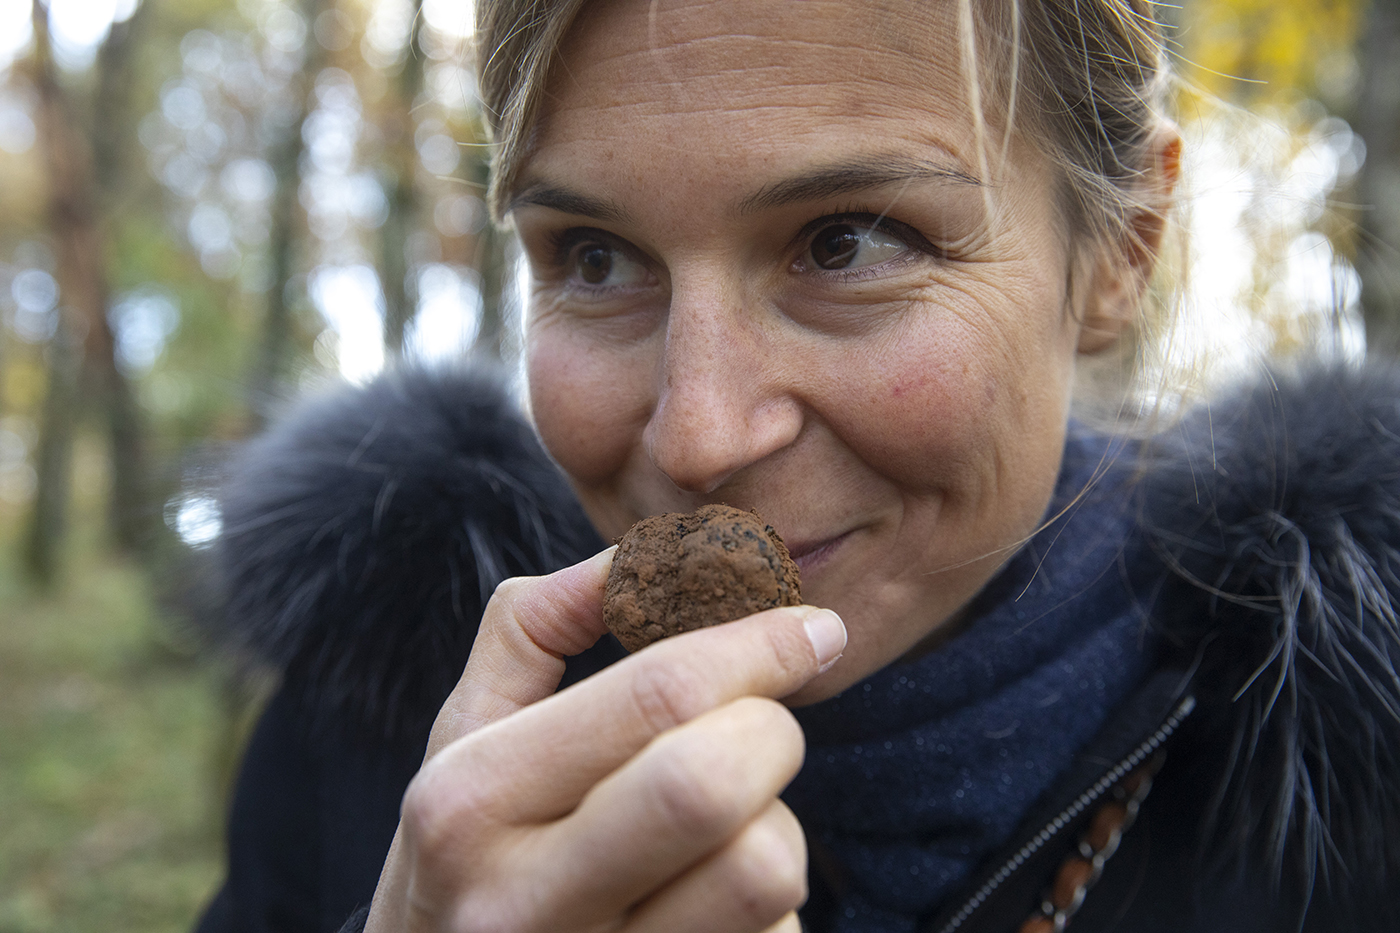 Moment fort pour Marie-Amélie qui peut sentir la truffe fraîchement déterrée - Crédit photo Région Bourgogne-Franche-Comté / David Cesbron